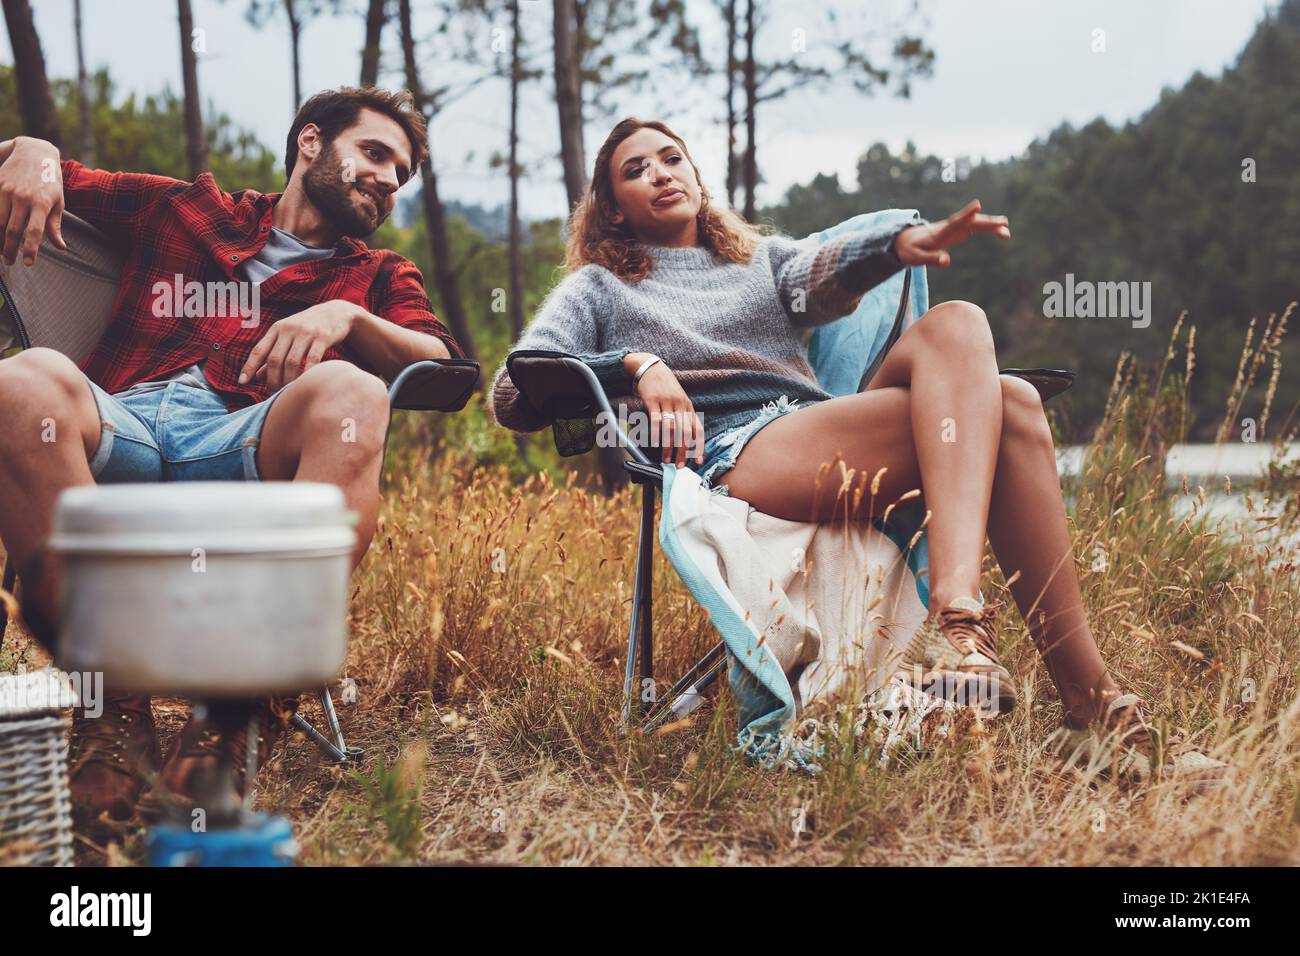 Entspanntes junges Paar, das am See campt. Eine junge Frau, die auf ihren Blick zeigt, während sie mit ihrem Freund auf ihrem Campingplatz sitzt. Stockfoto